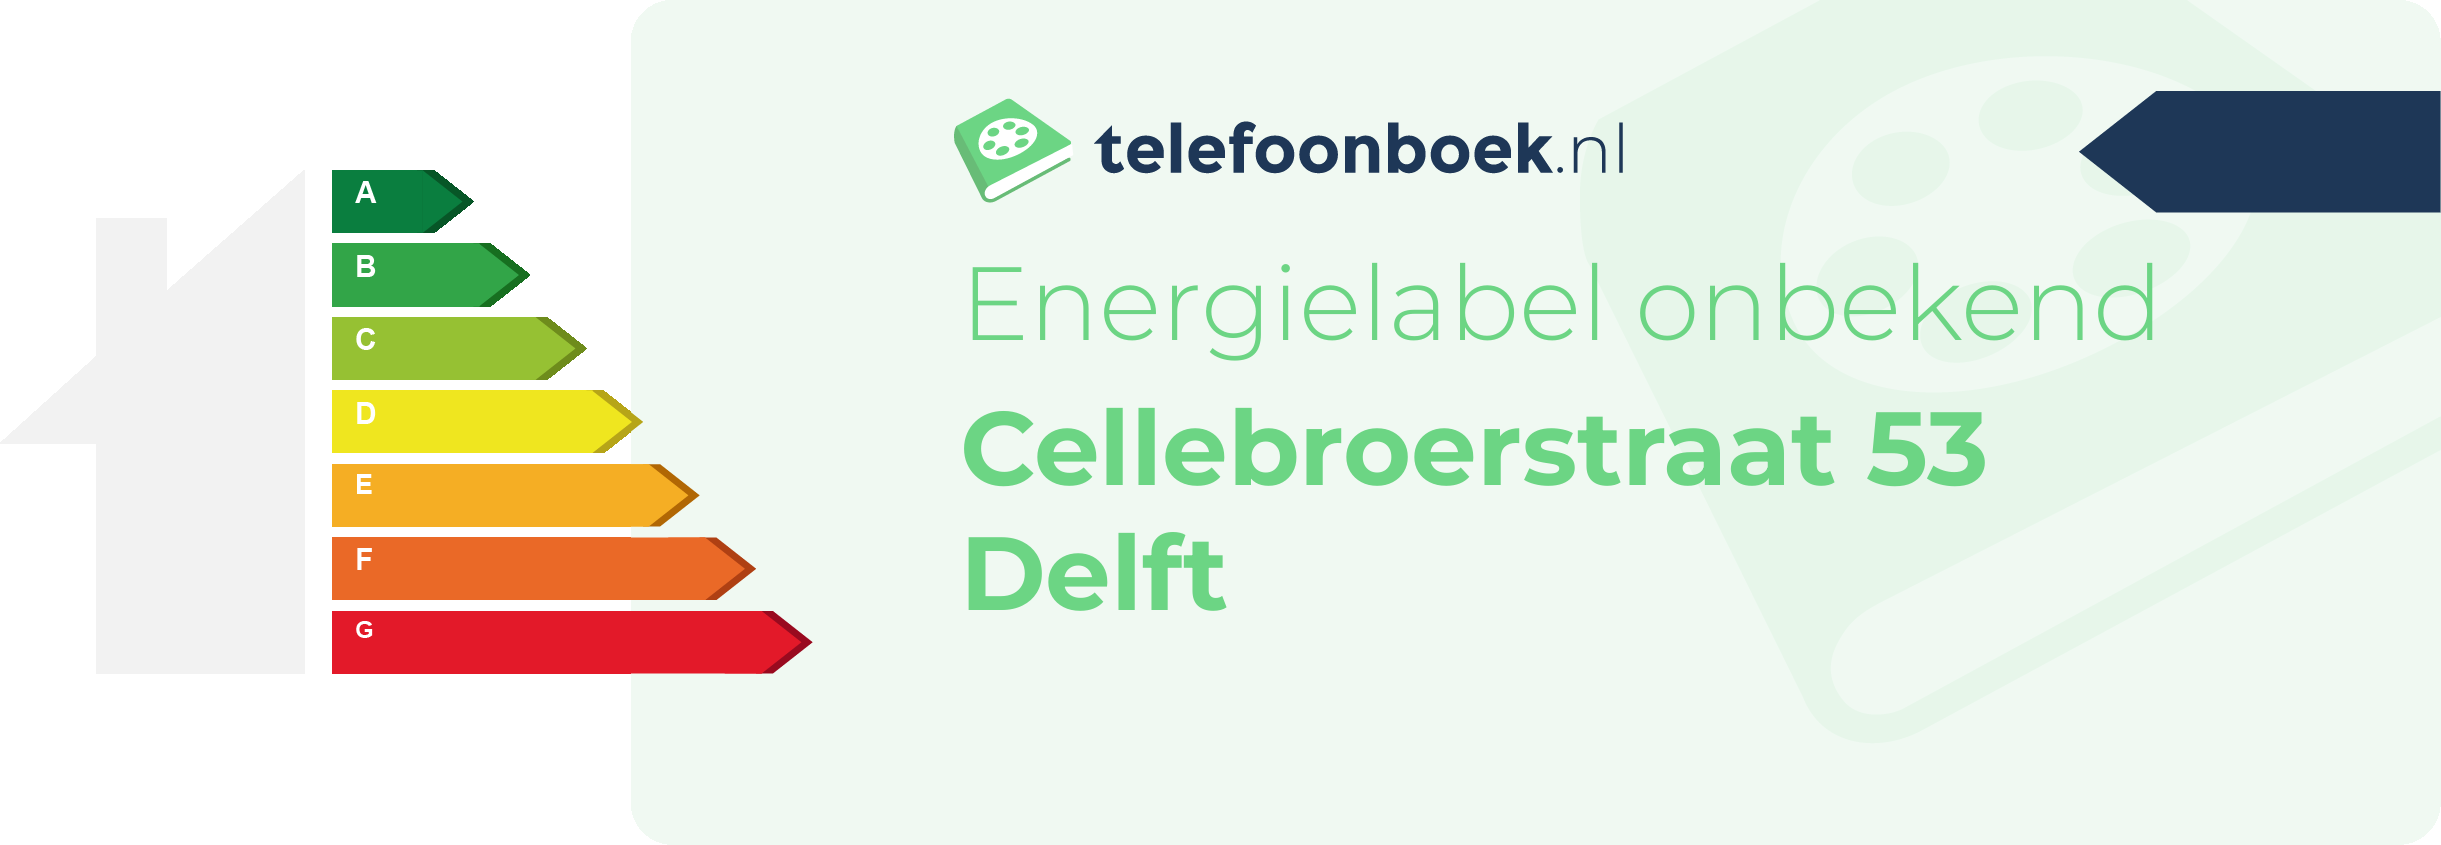 Energielabel Cellebroerstraat 53 Delft